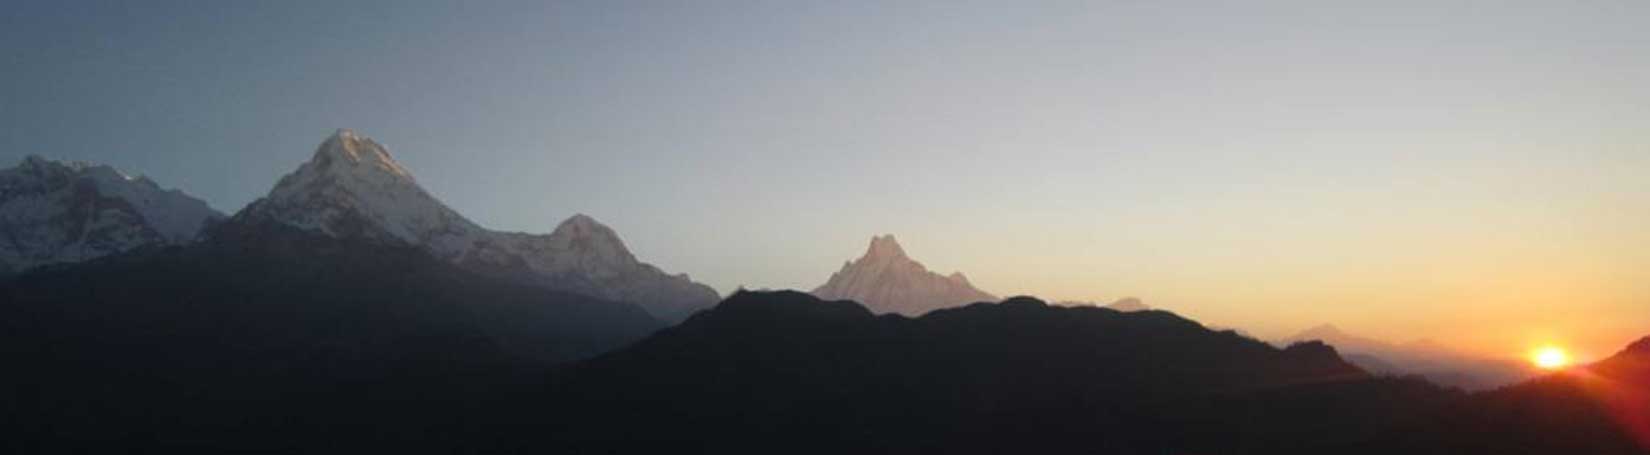 Annapurna Sunrise View Trekking